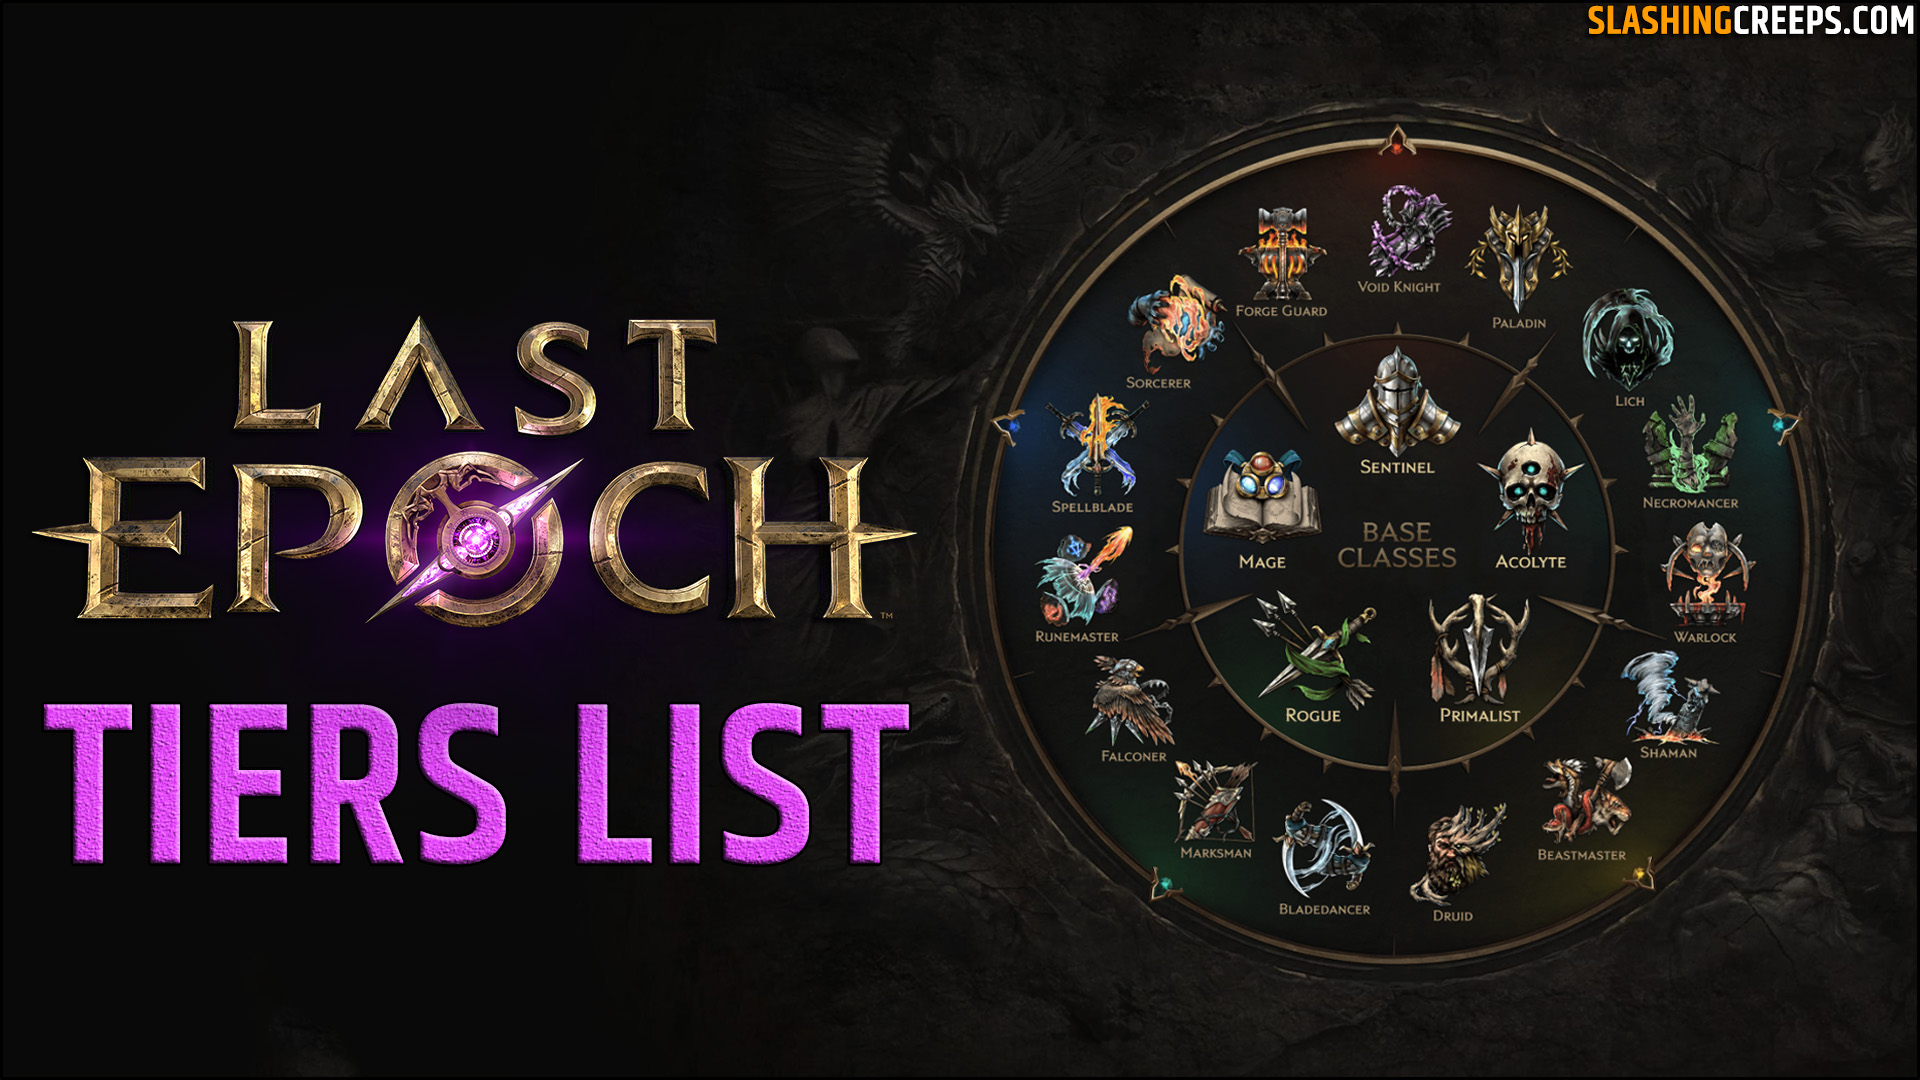 Tiers List Last Epoch 1.0, tous les builds des classes pour la sortie du jeu